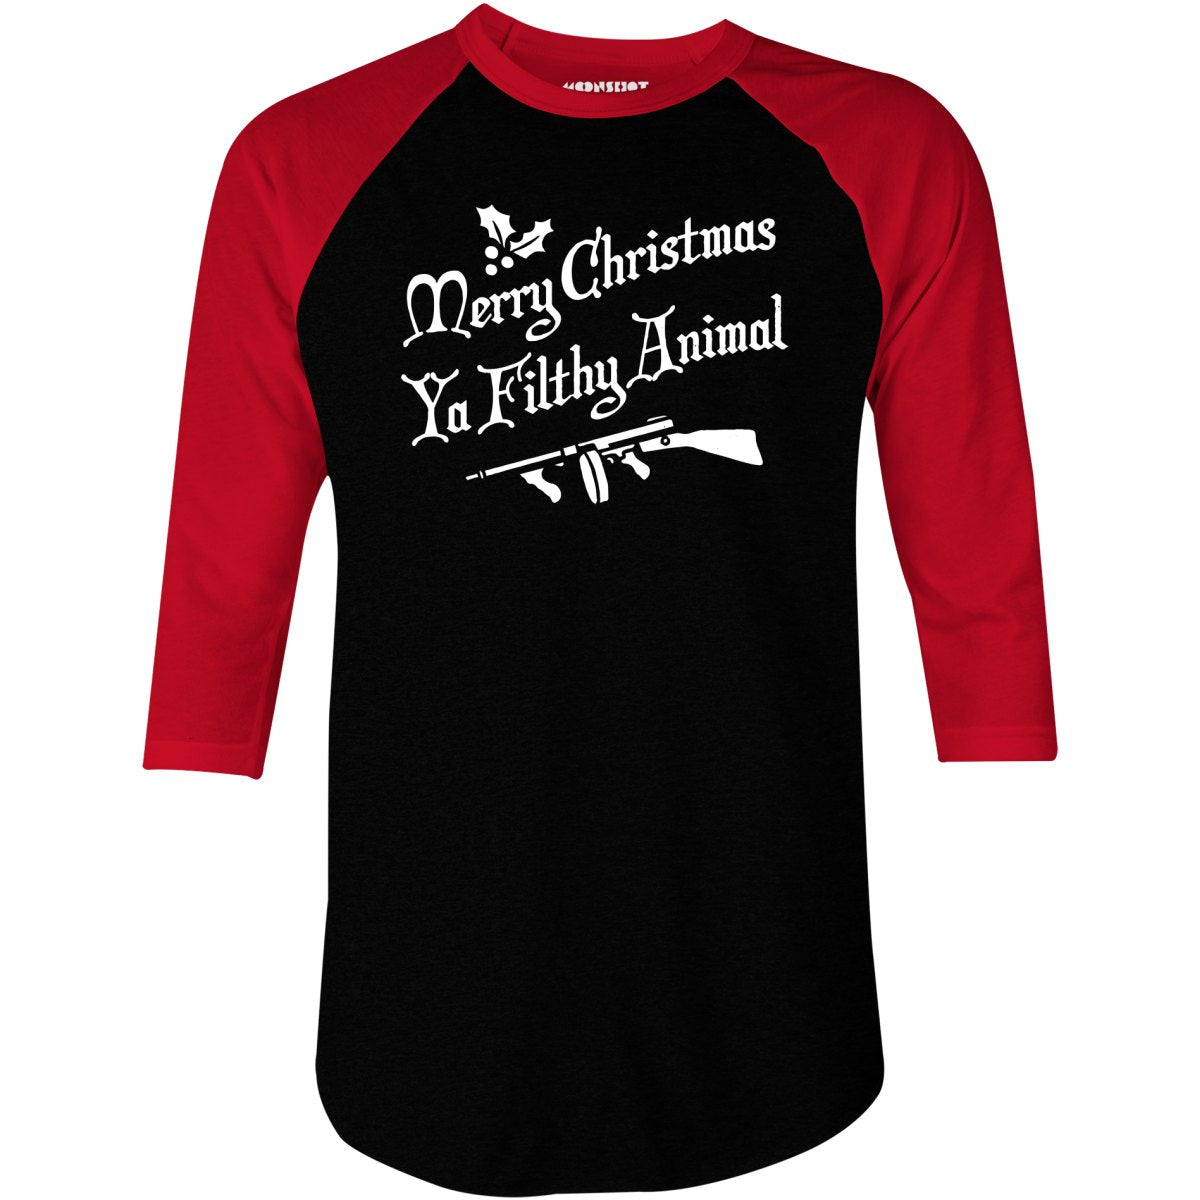 Merry Christmas Ya Filthy Animal - 3/4 Sleeve Raglan T-Shirt